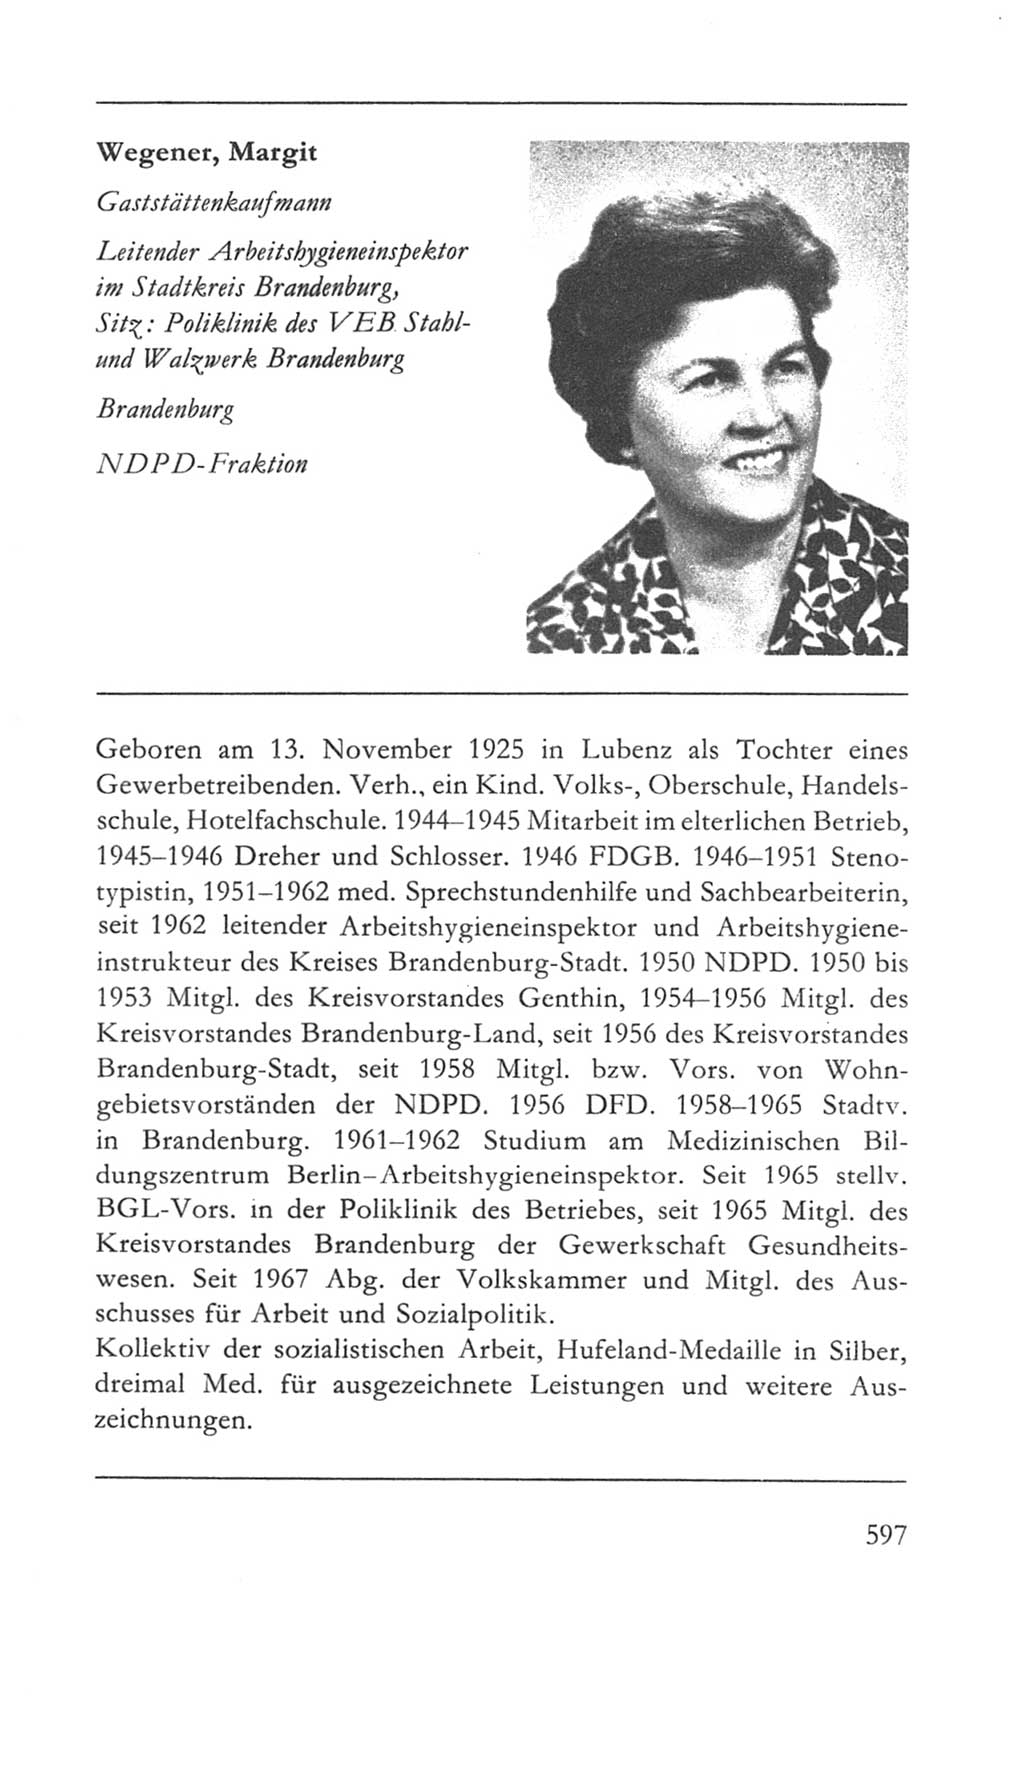 Volkskammer (VK) der Deutschen Demokratischen Republik (DDR) 5. Wahlperiode 1967-1971, Seite 597 (VK. DDR 5. WP. 1967-1971, S. 597)